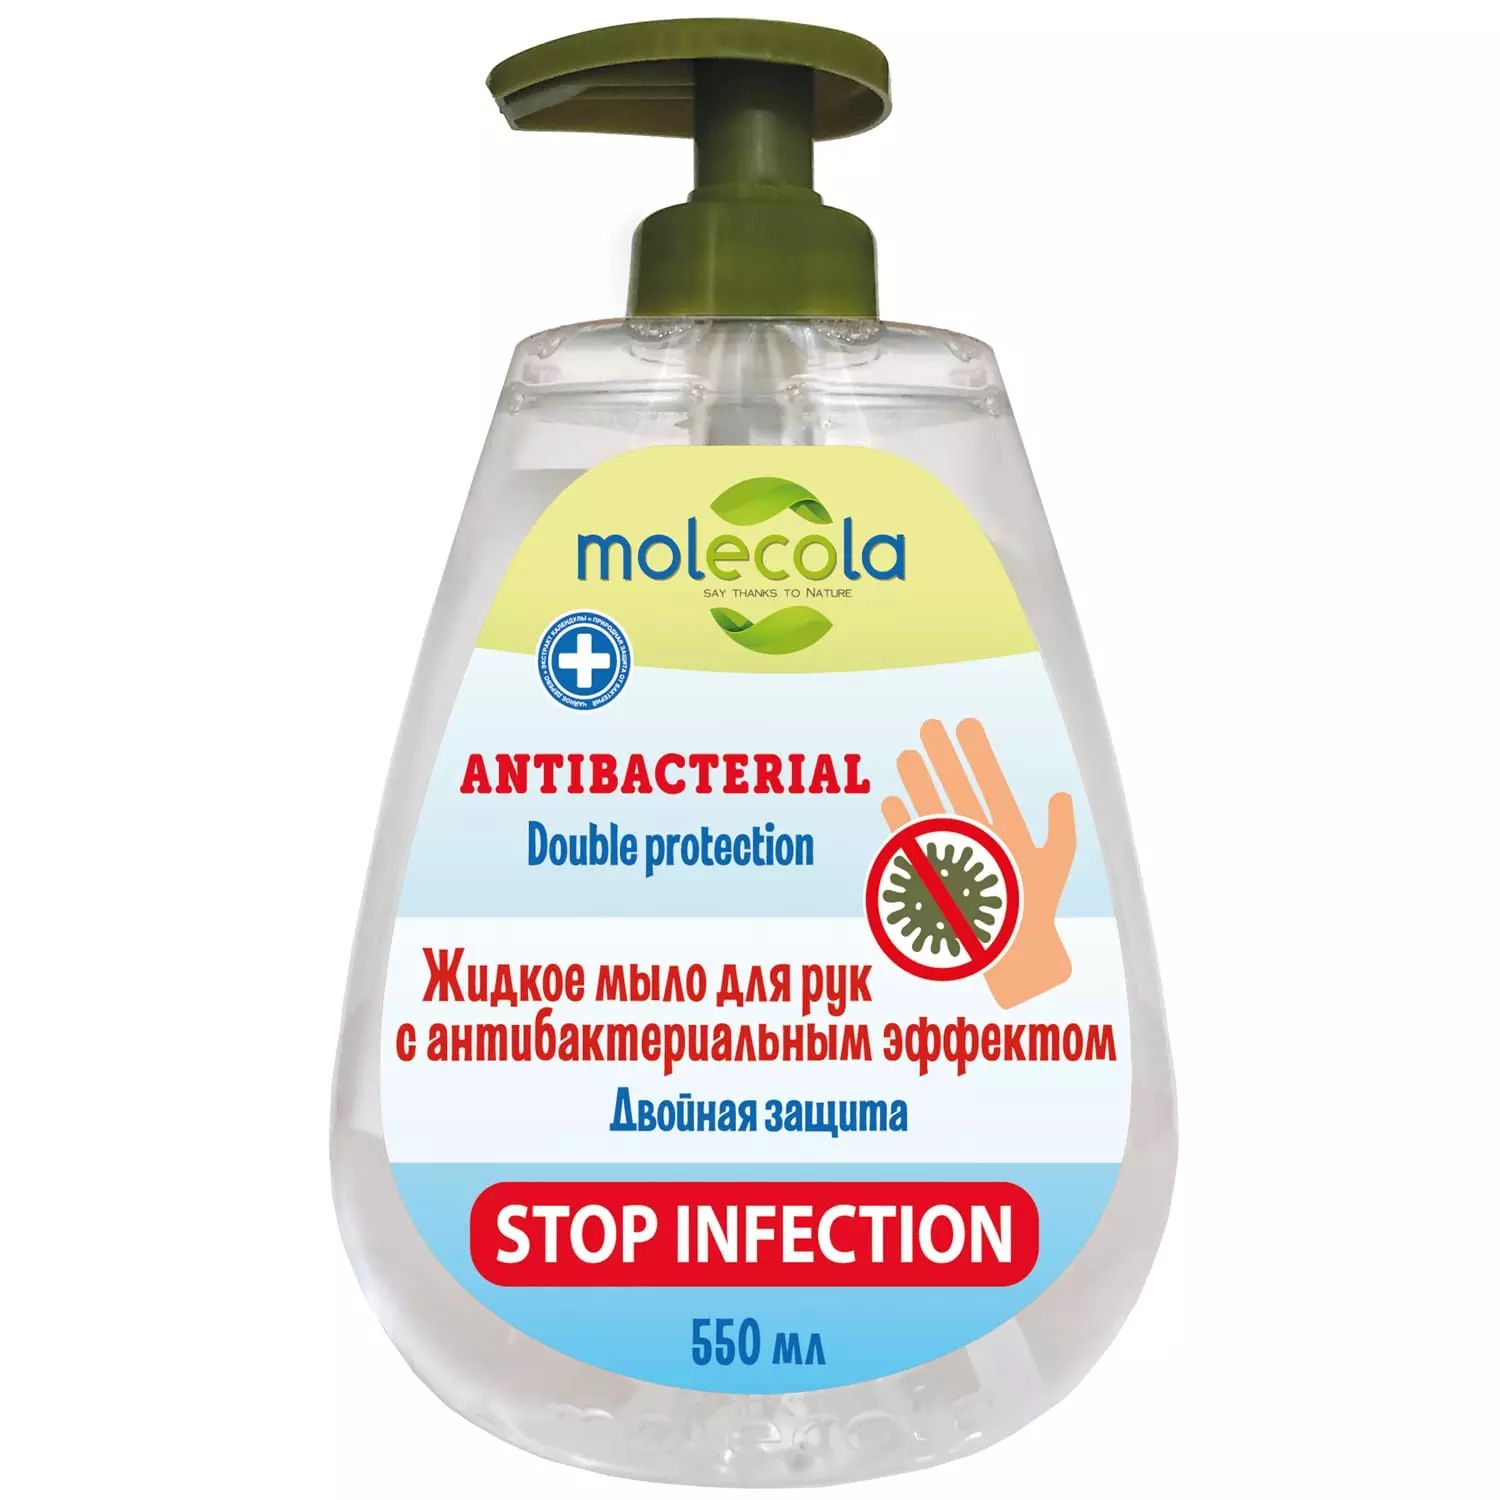 Мыло жидкое для рук Molecola Doble Protection с антибактериальным эффектом 500 мл зубочистки 200 шт дерево пластиковая баночка grifon 400 003